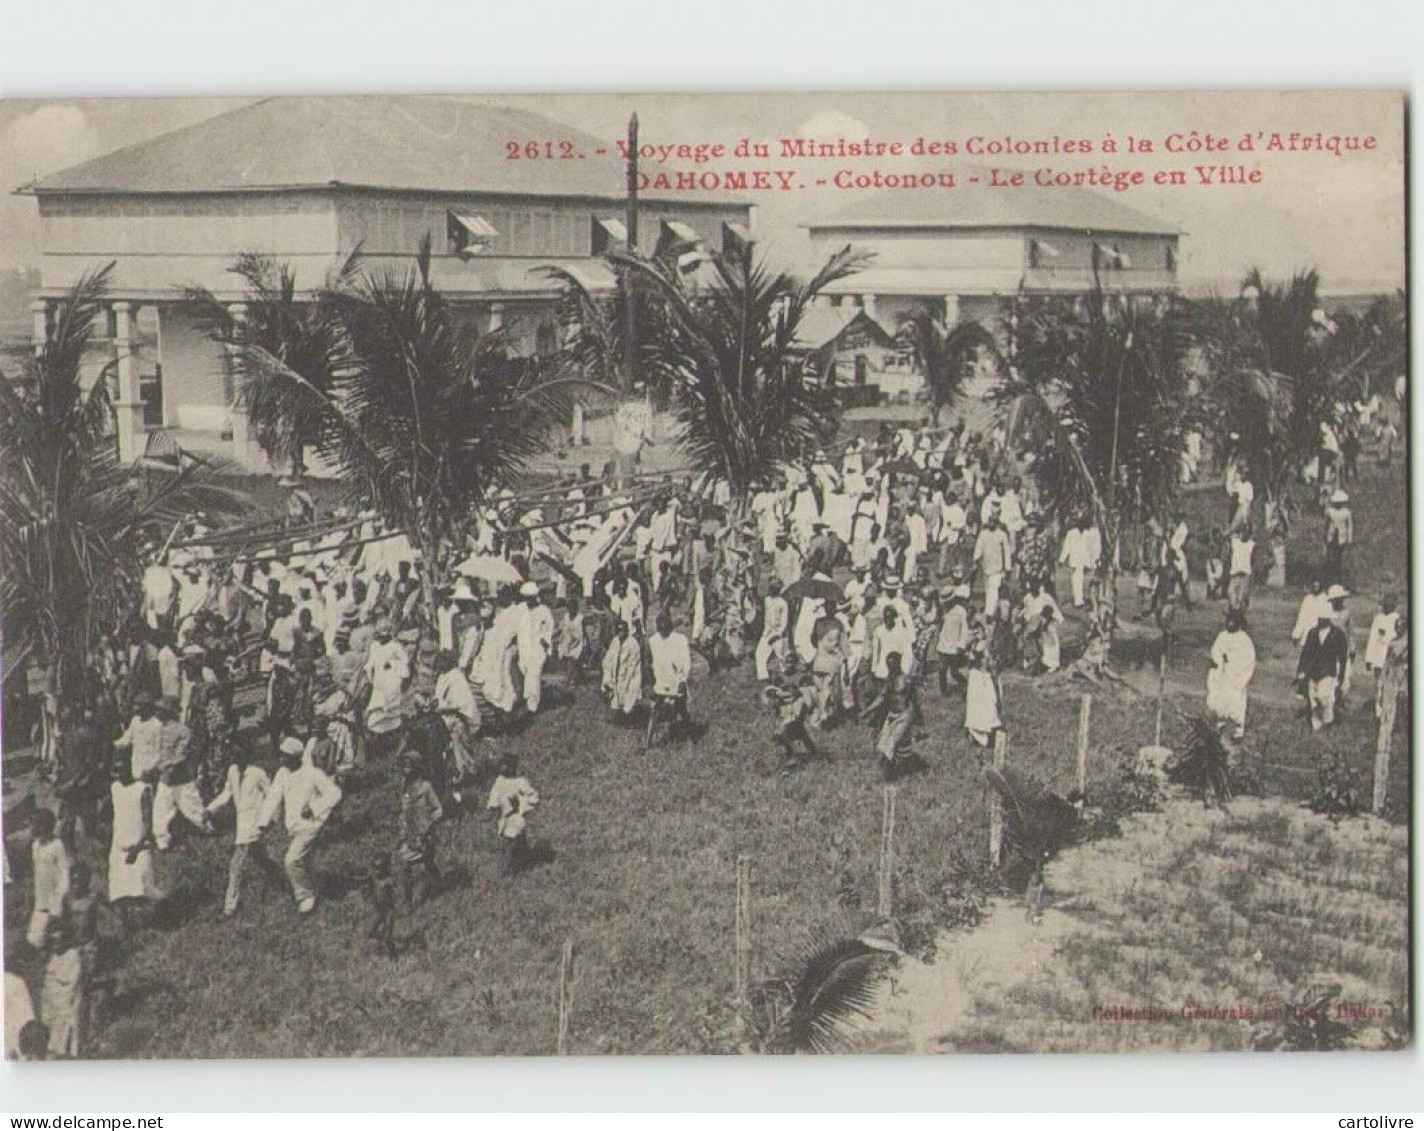 Voyage Du Ministre Des Colonies. DAHOMEY . Cotonou Le Cortège En Ville (Fortier 2612) - Dahome